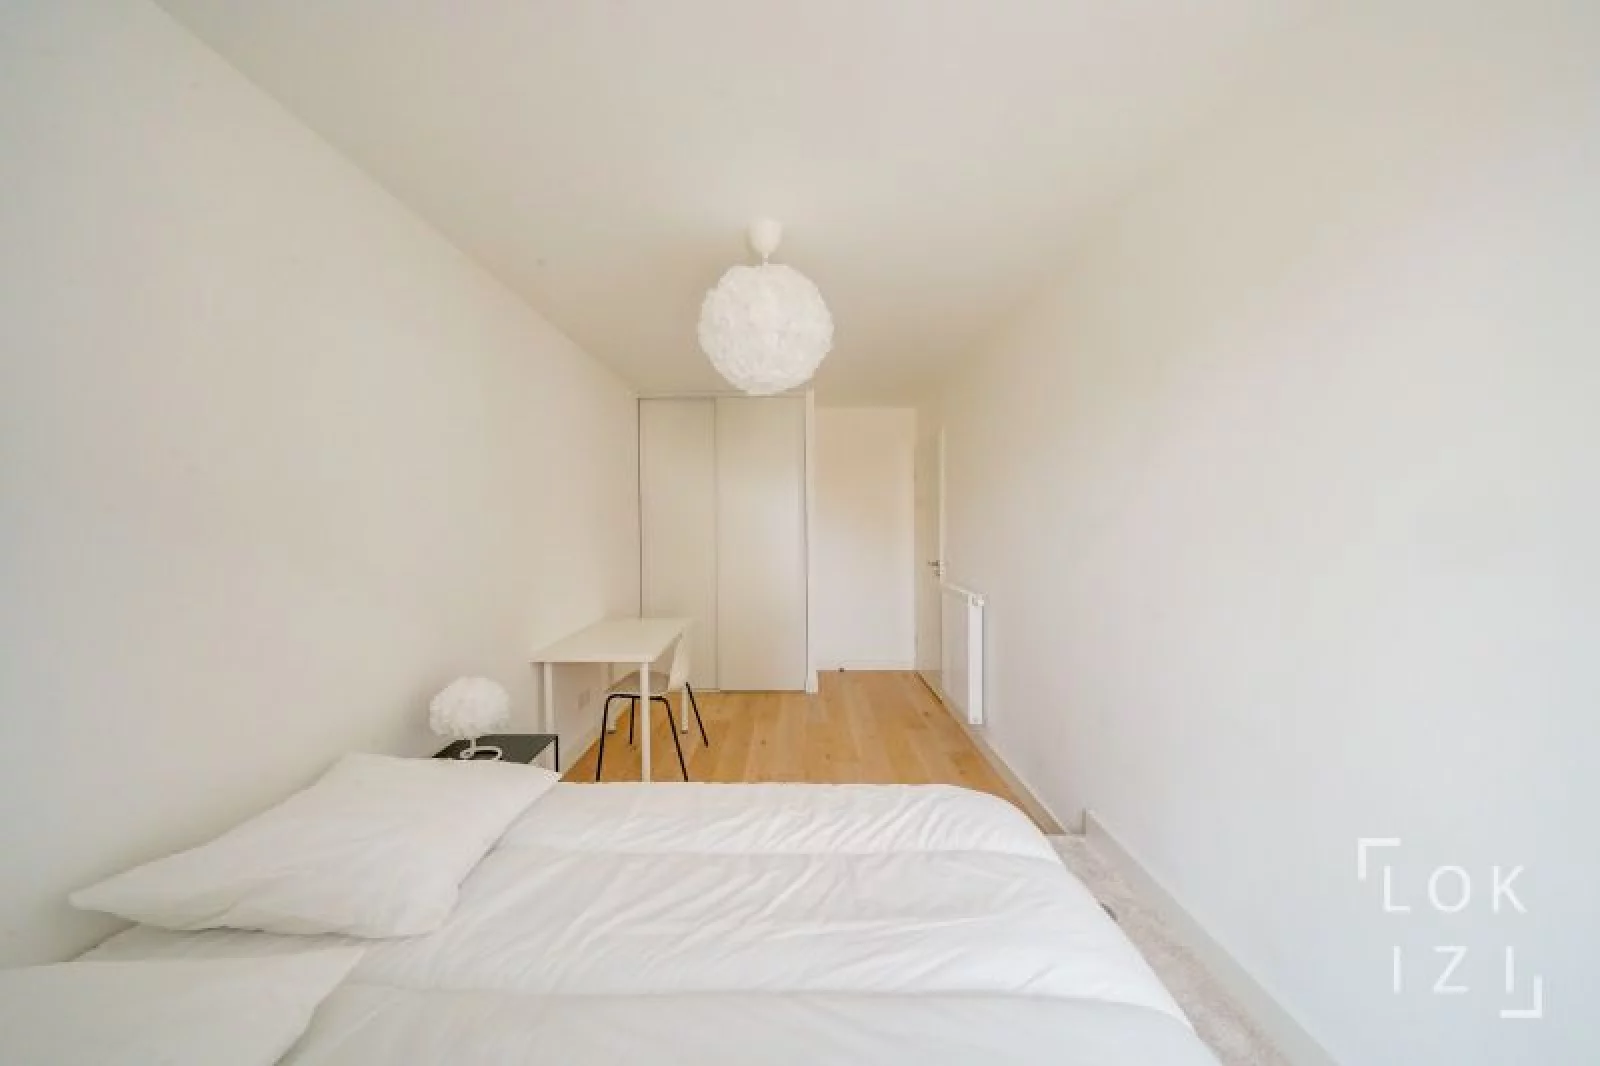 Location appartement meublé 4 pièces 90m² (Bordeaux - Caudéran)